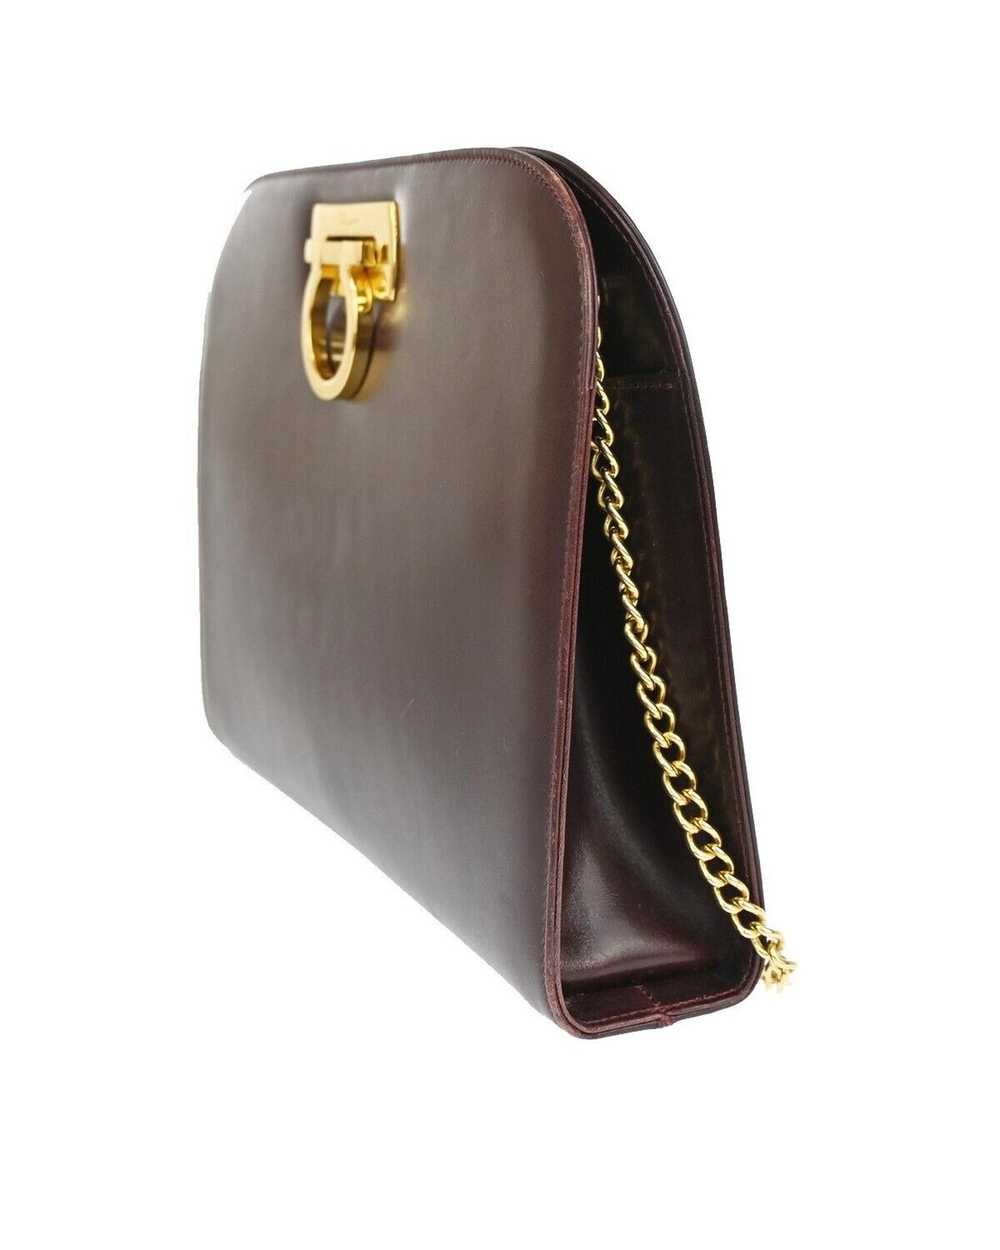 Salvatore Ferragamo Burgundy Leather Shoulder Bag - image 2